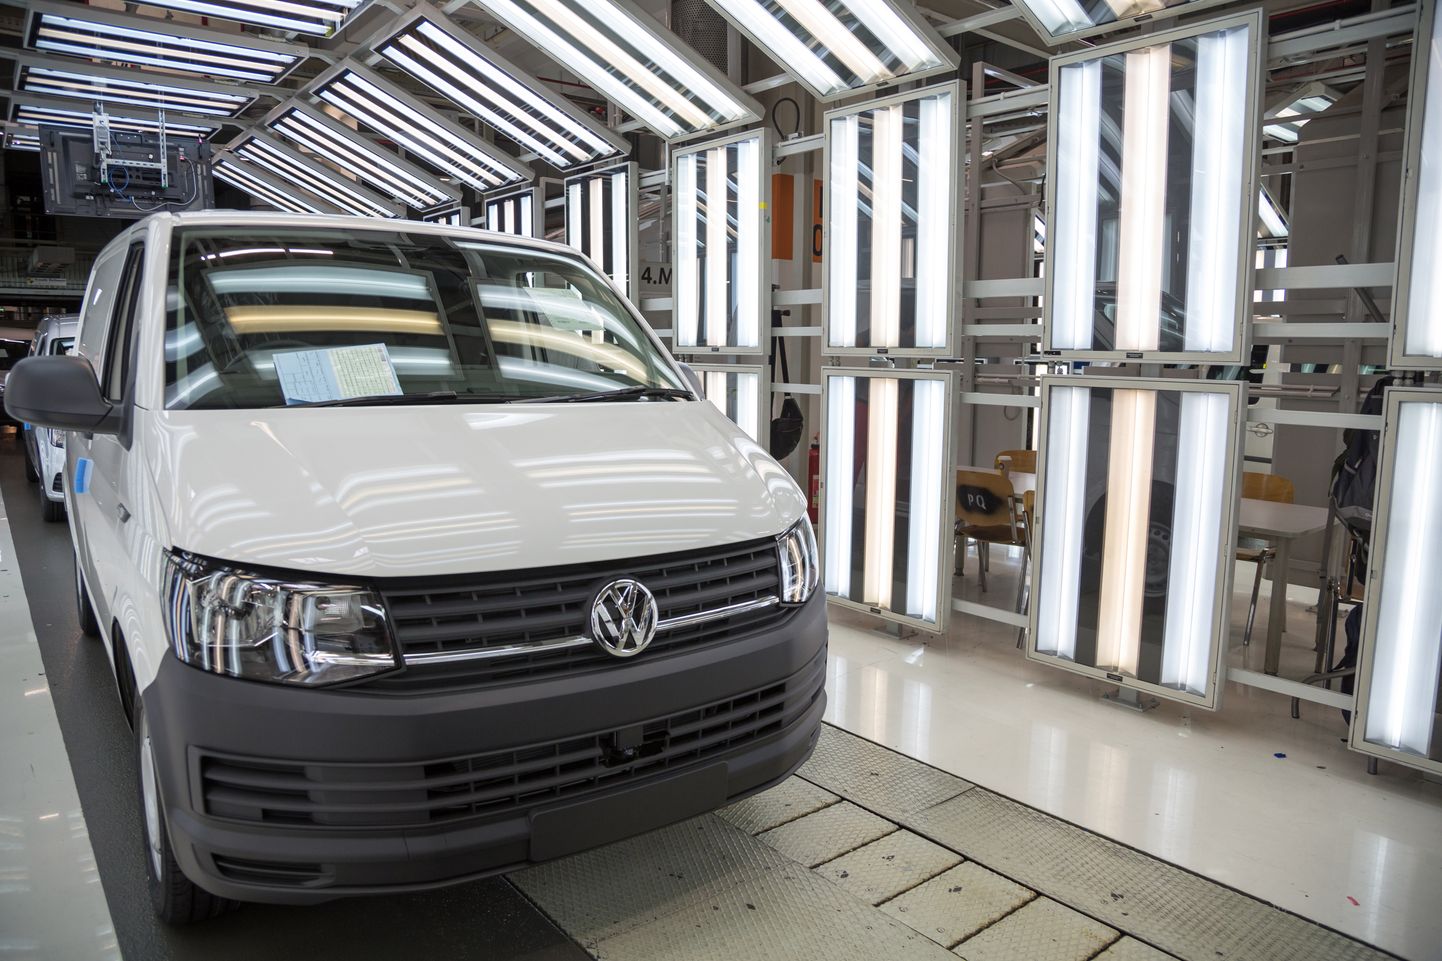 Купленный в Швеции Volkswagen доставил эстонцу много проблем.